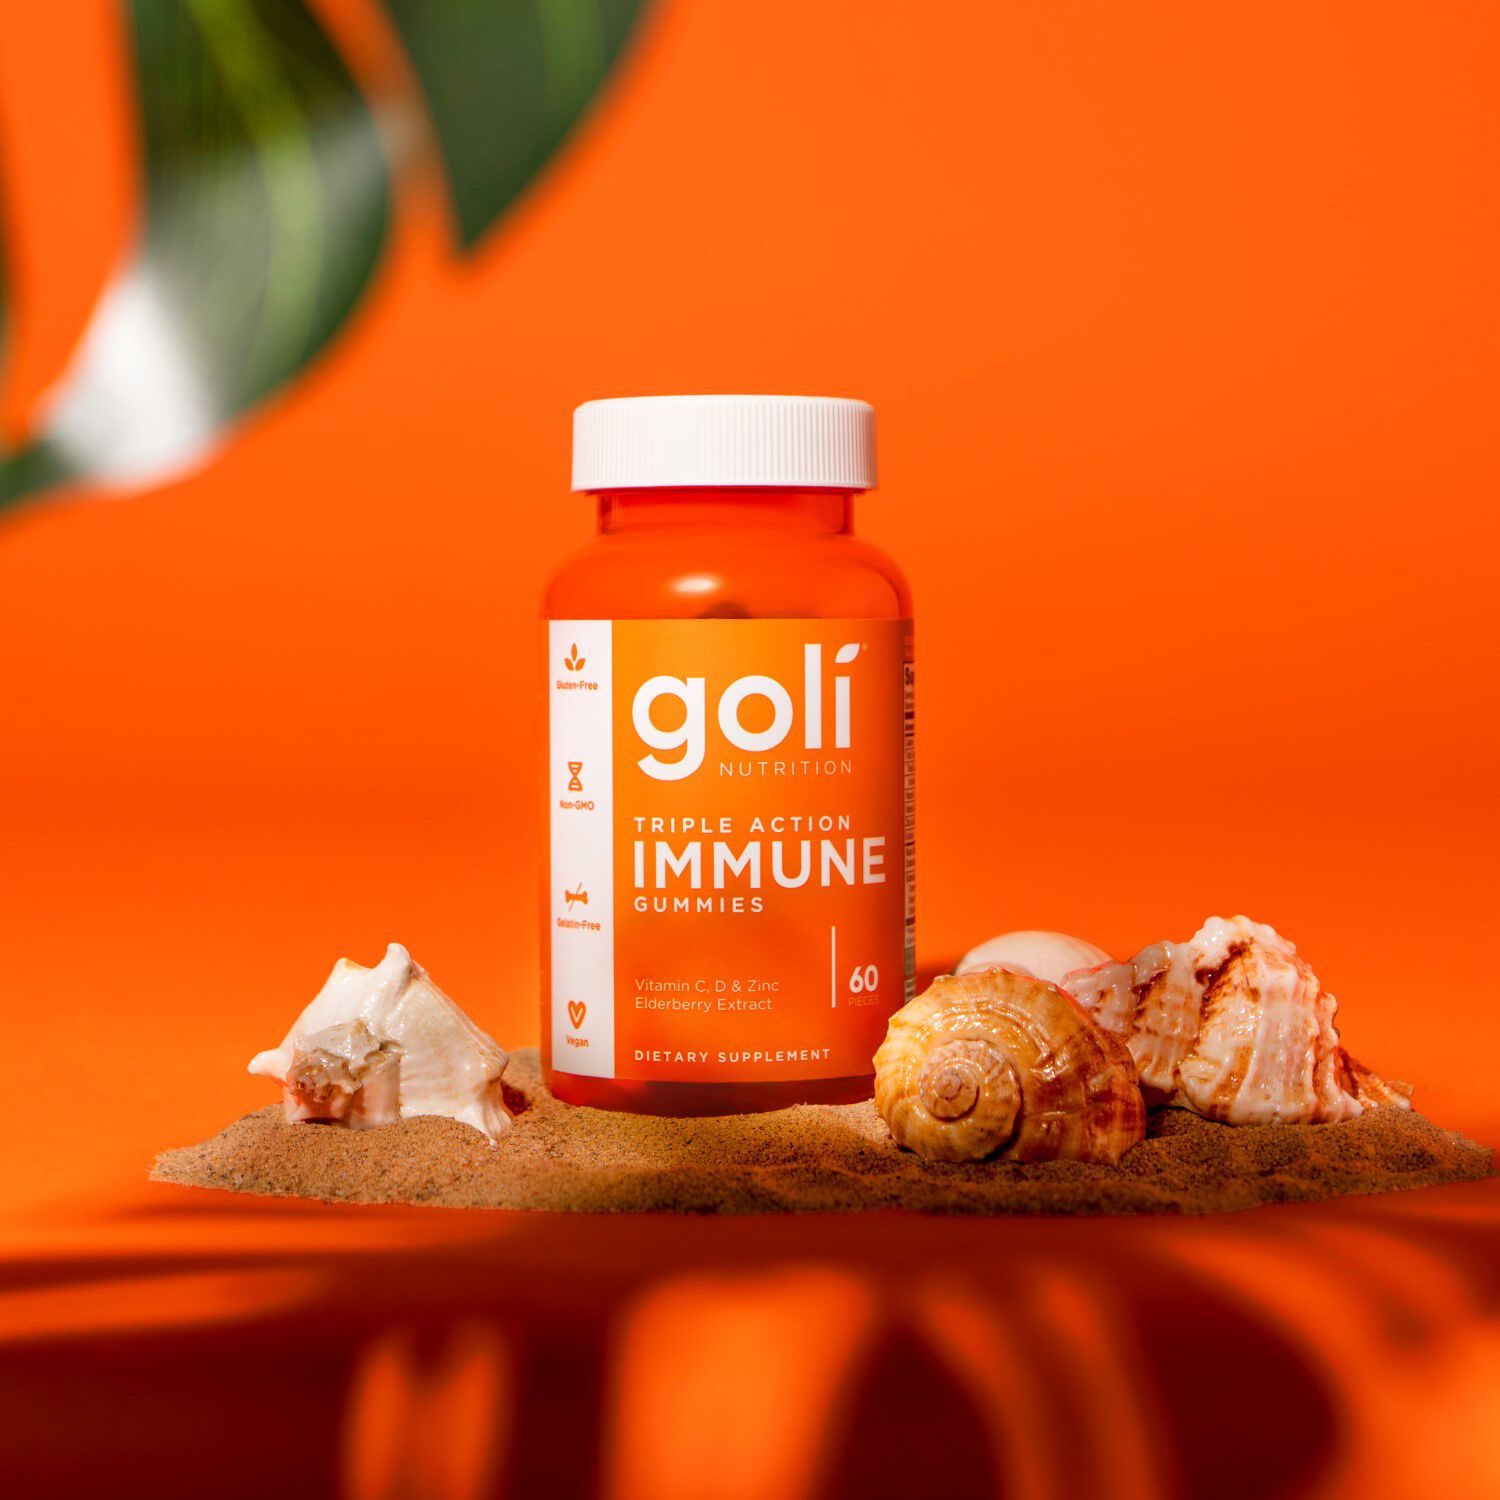 Goli Nutrition Superfruits витаминные жевательные конфеты, 60 шт/1 упаковка цена и фото